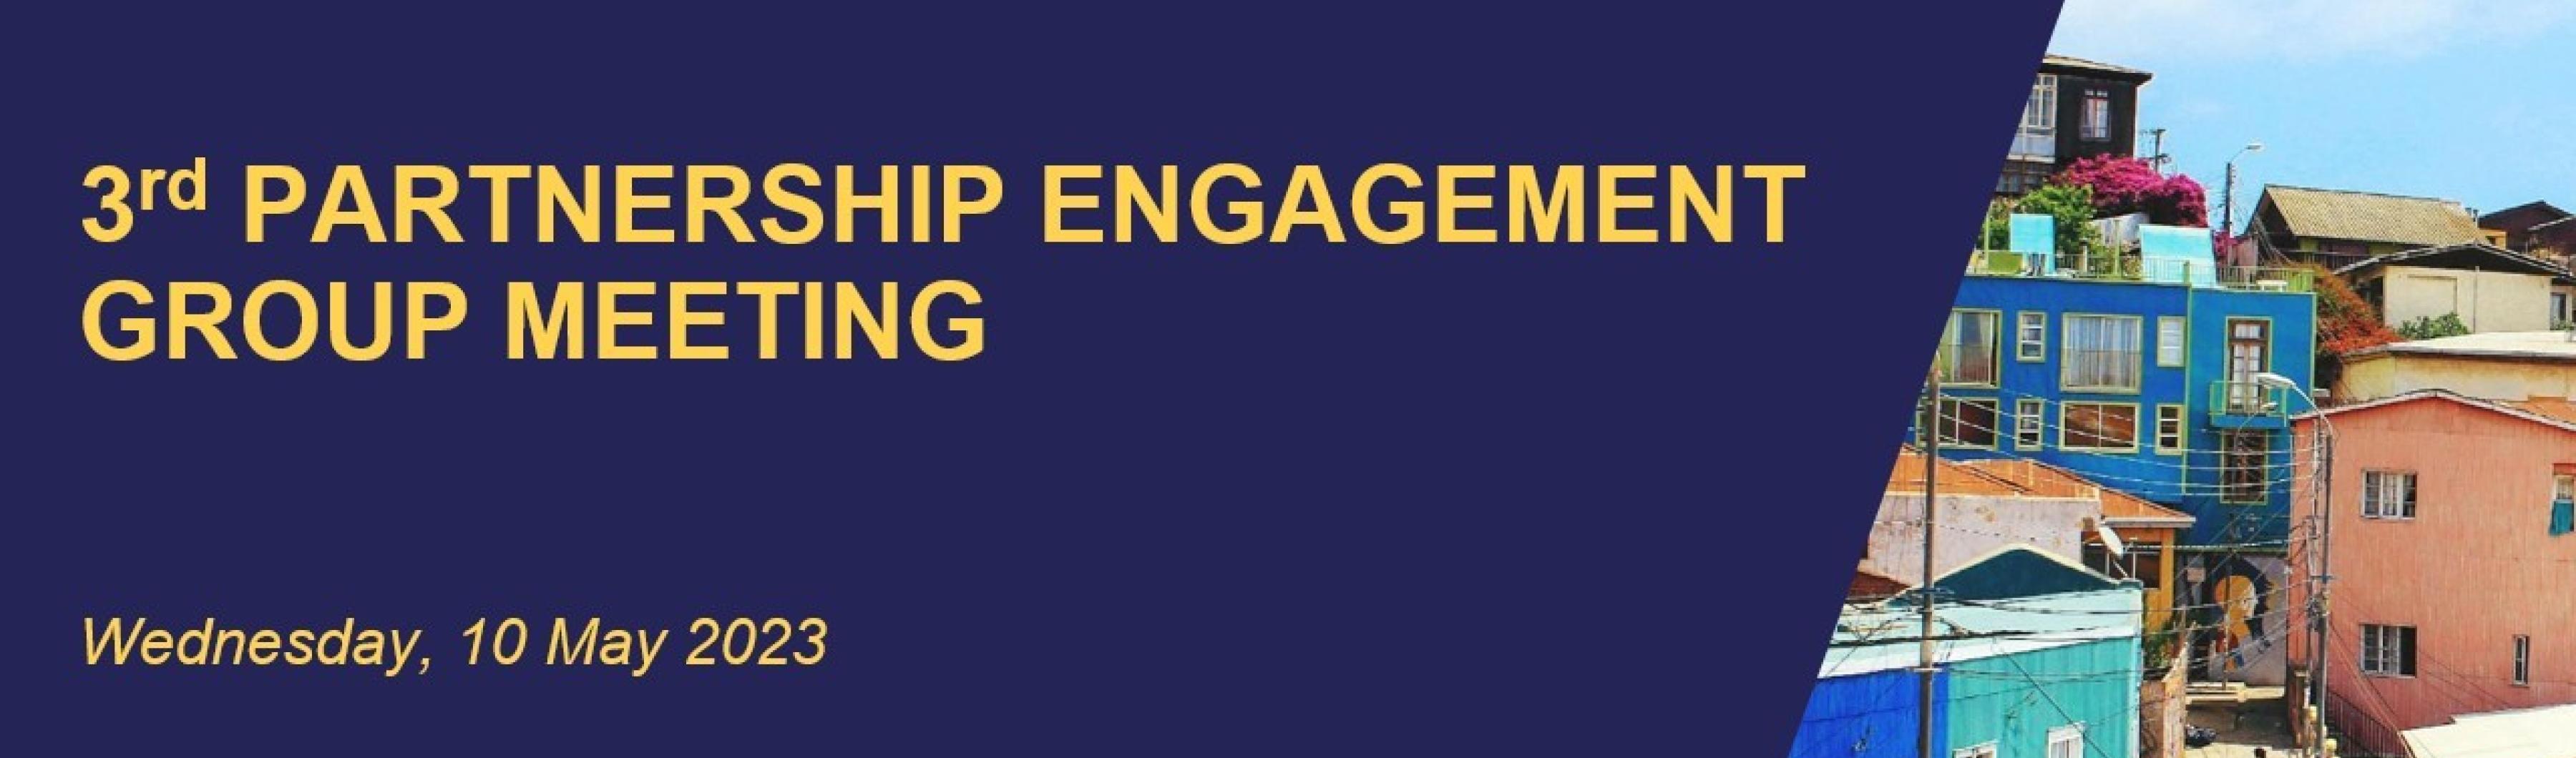 una diapositiva con el texto 3rd partnership engagement group meeting sobre fondo azul marino; a la derecha, una imagen de edificios de colores vivos